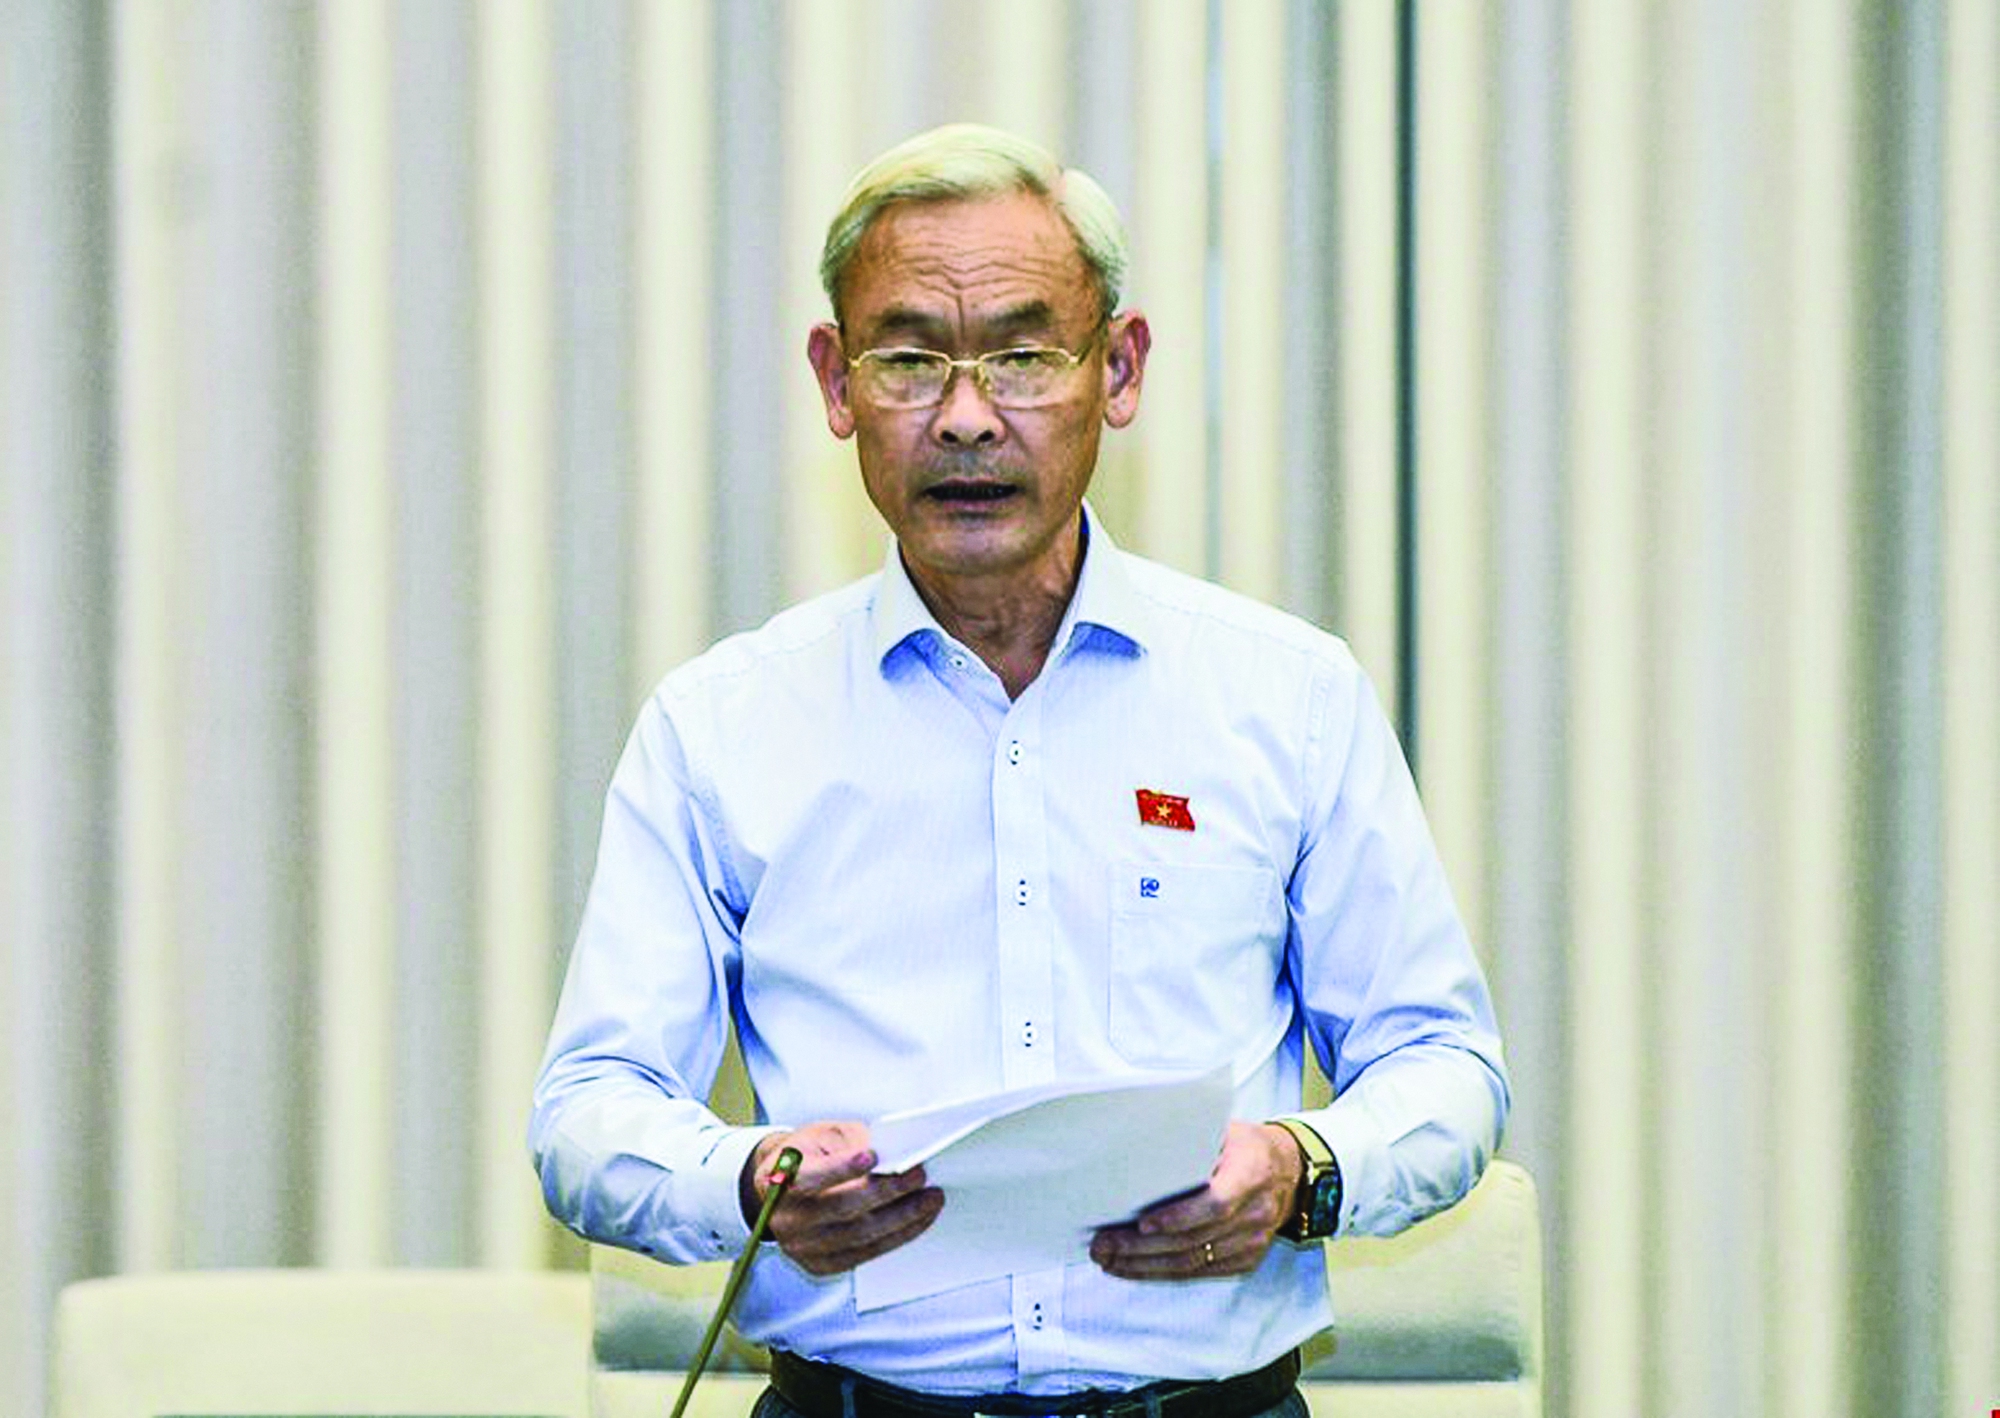 ĐBQH Nguyễn Phú Cường, Chủ nhiệm Ủy ban Tài chính - Ngân sách của Quốc hội (Đoàn ĐBQH tỉnh Đồng Nai).